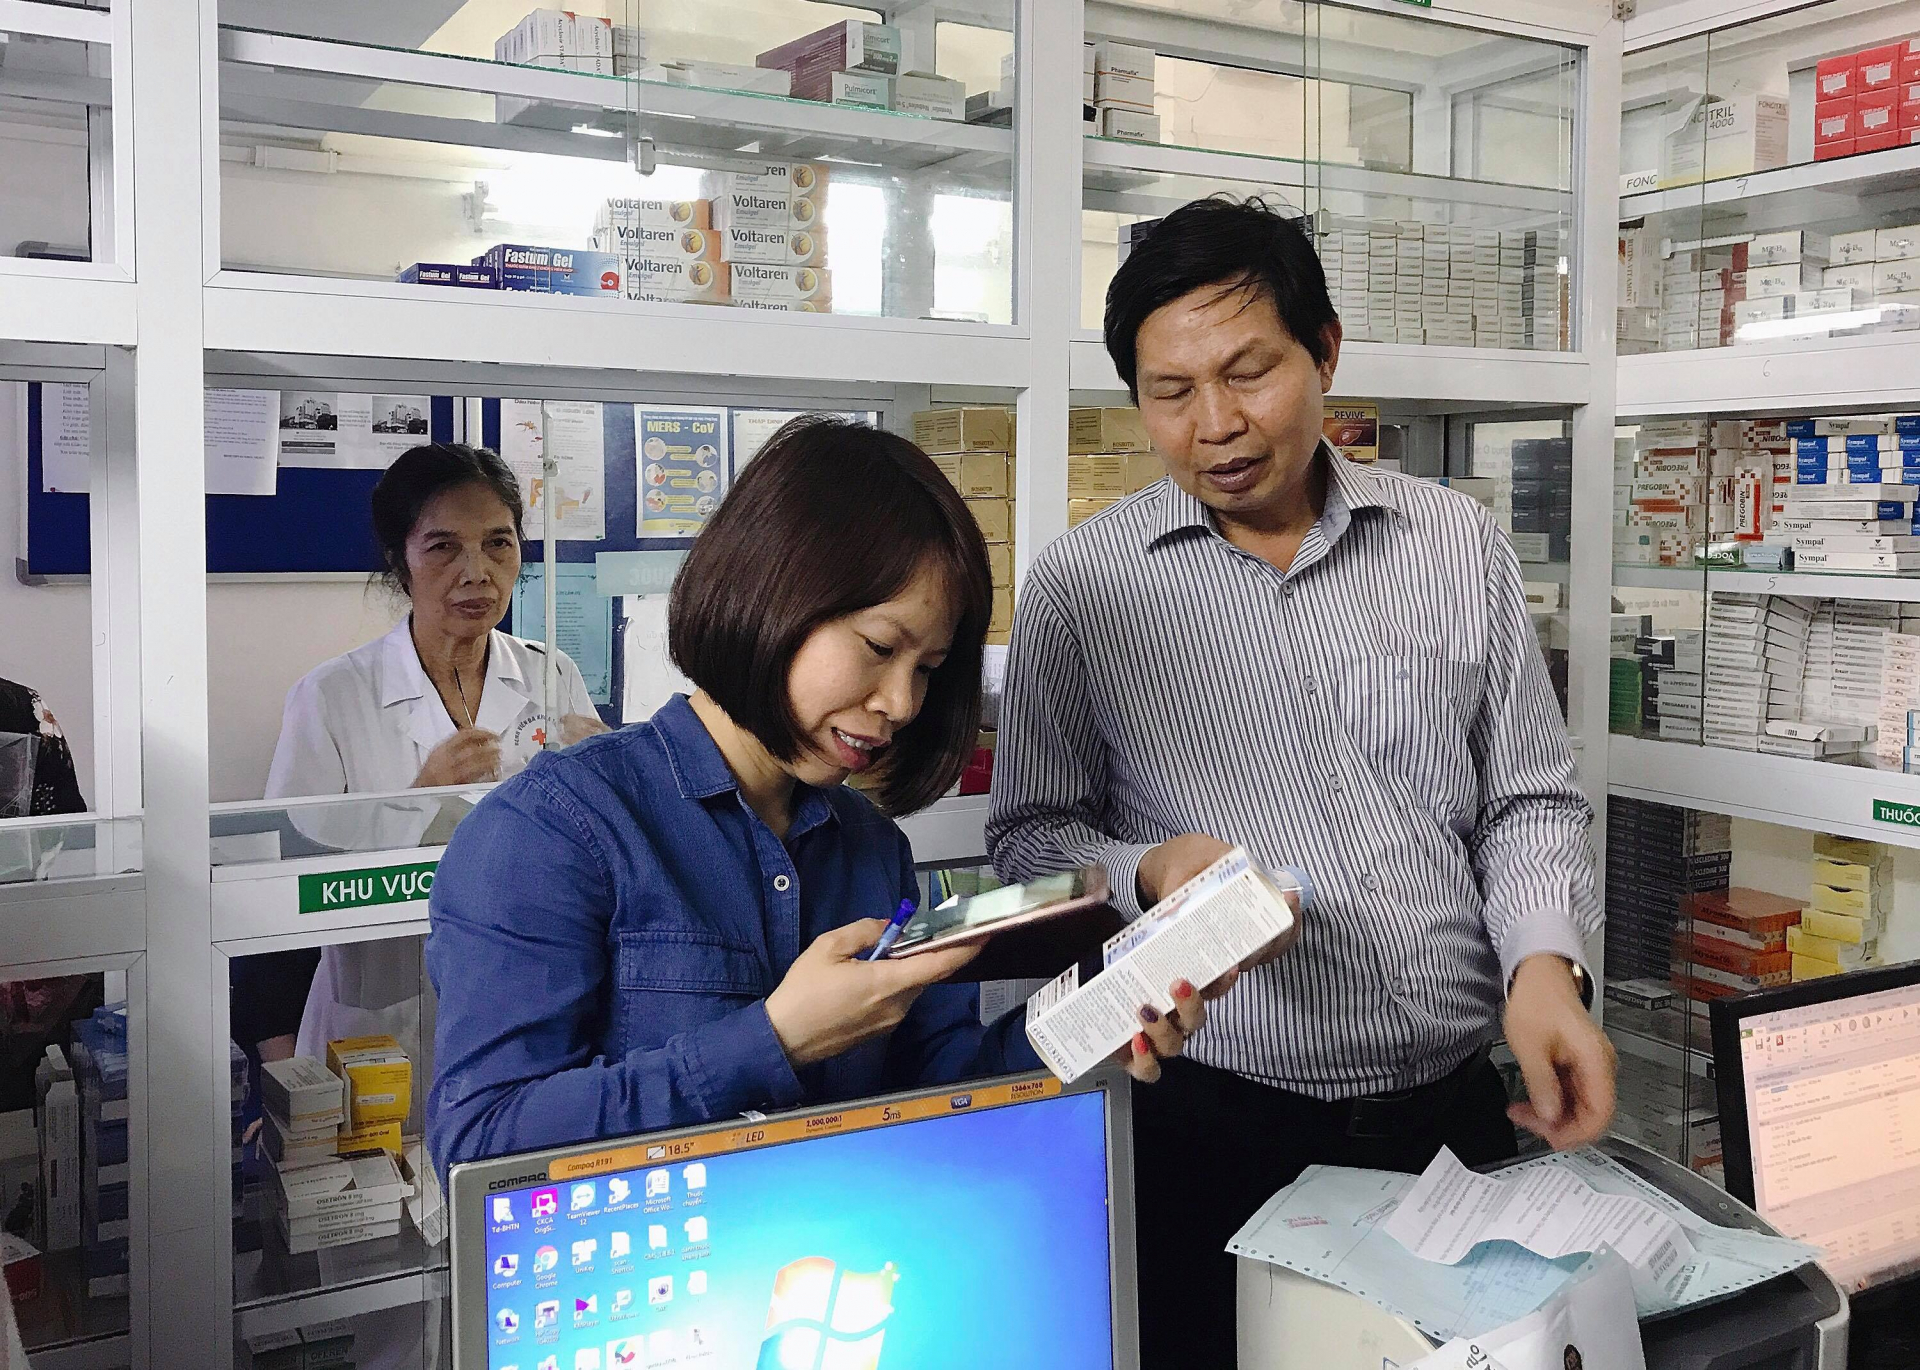 Đoàn kiểm tra của Sở Y tế Hà Nội tiến hành kiểm tra dược phẩm tại nhà thuốc